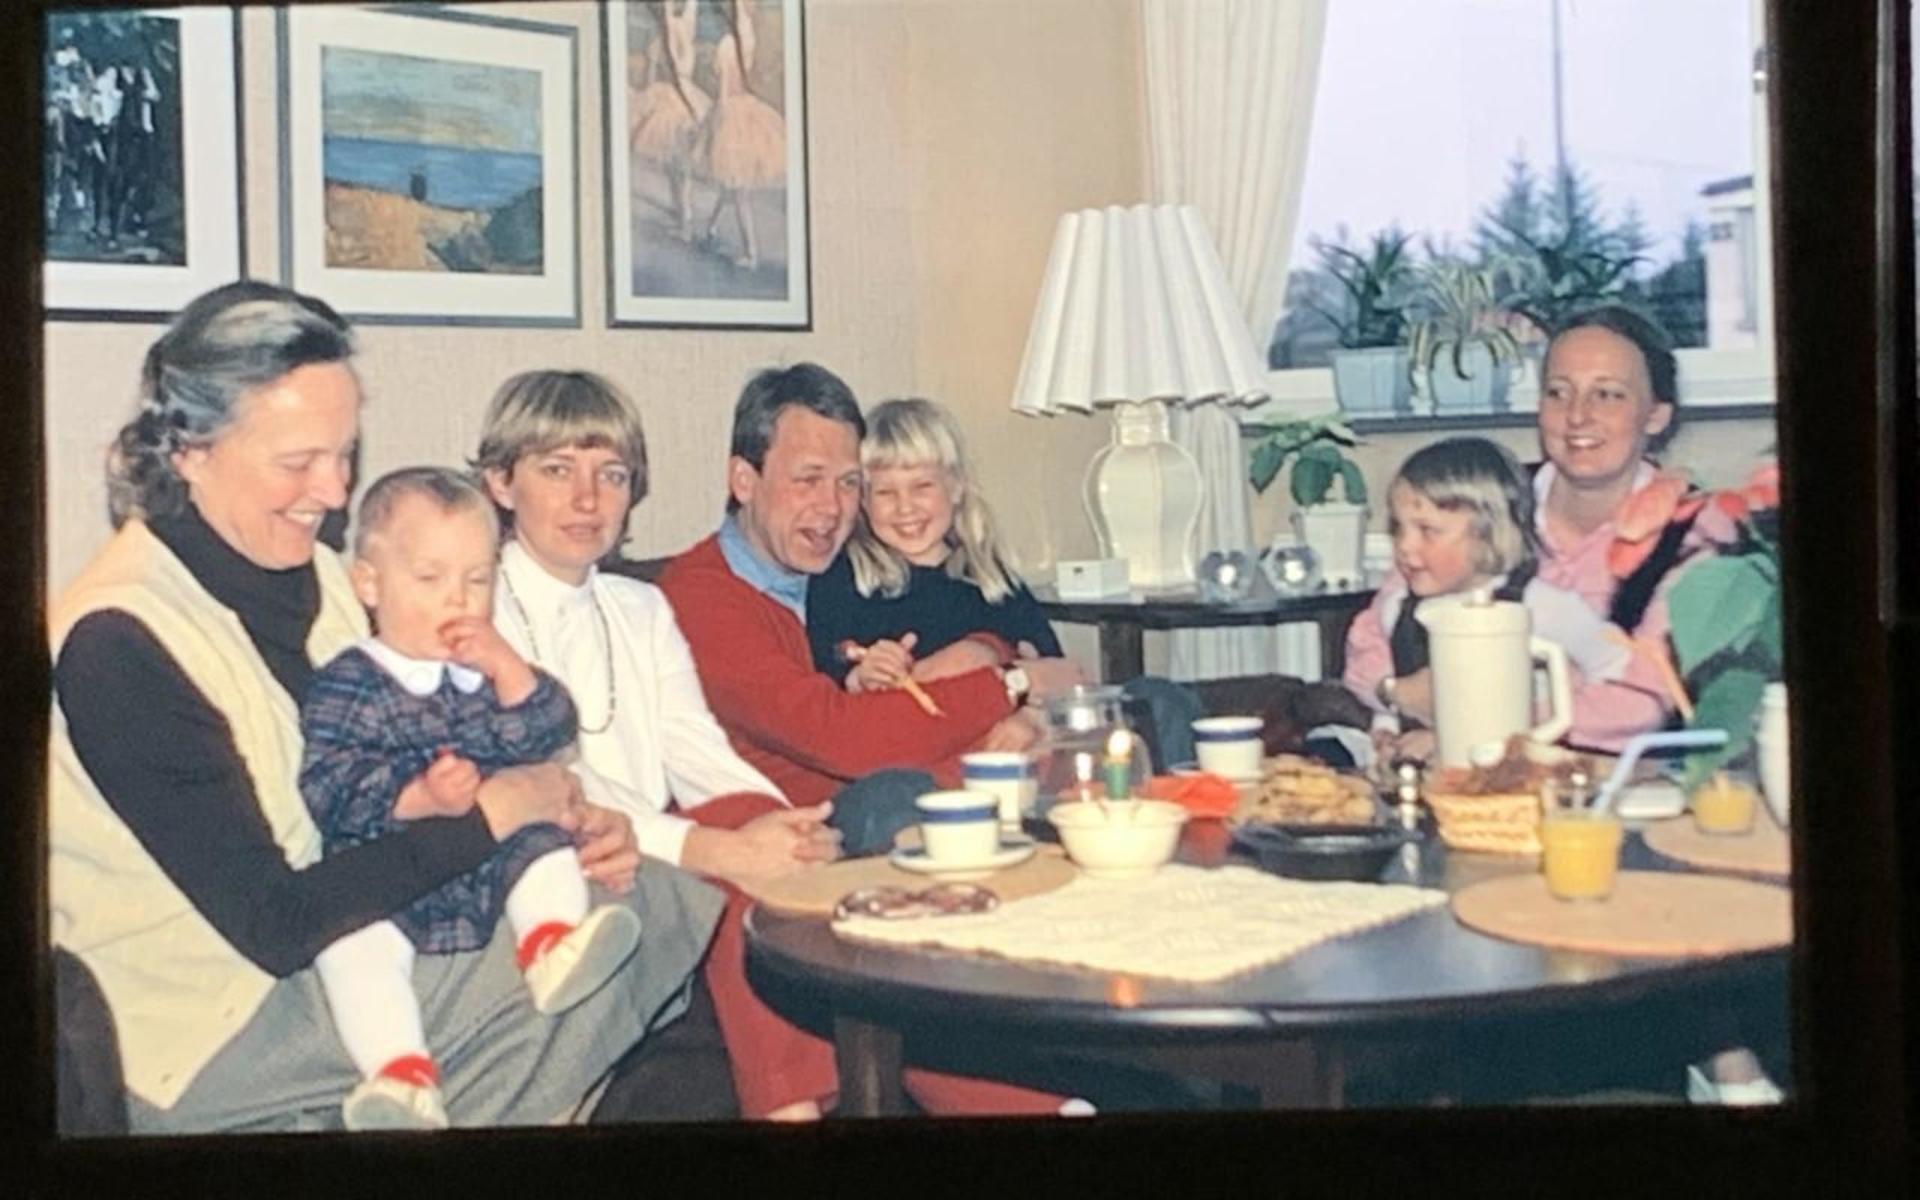 Det var den här bilden på bland andra Oskars föräldrar och systrar som kompisen Martin kunde identifiera. 